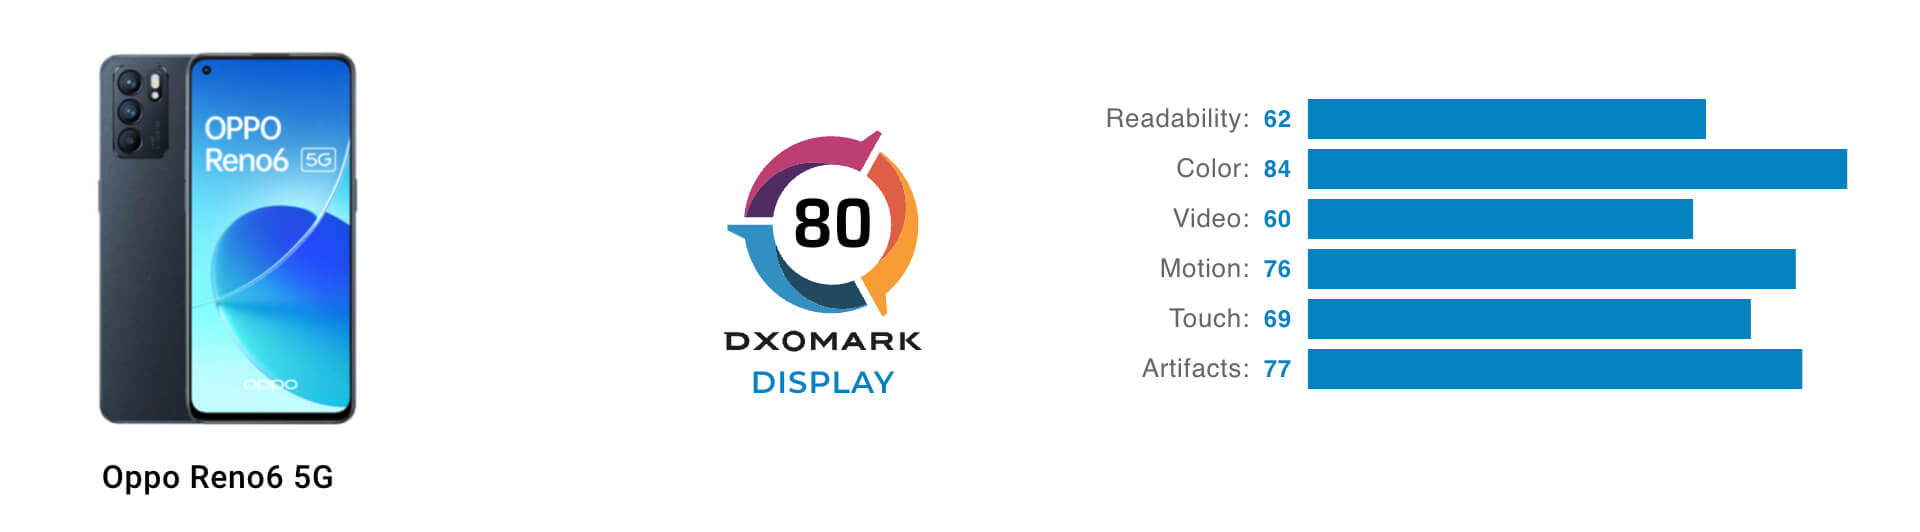 DxOMark оценил качество дисплея OPPO Reno6